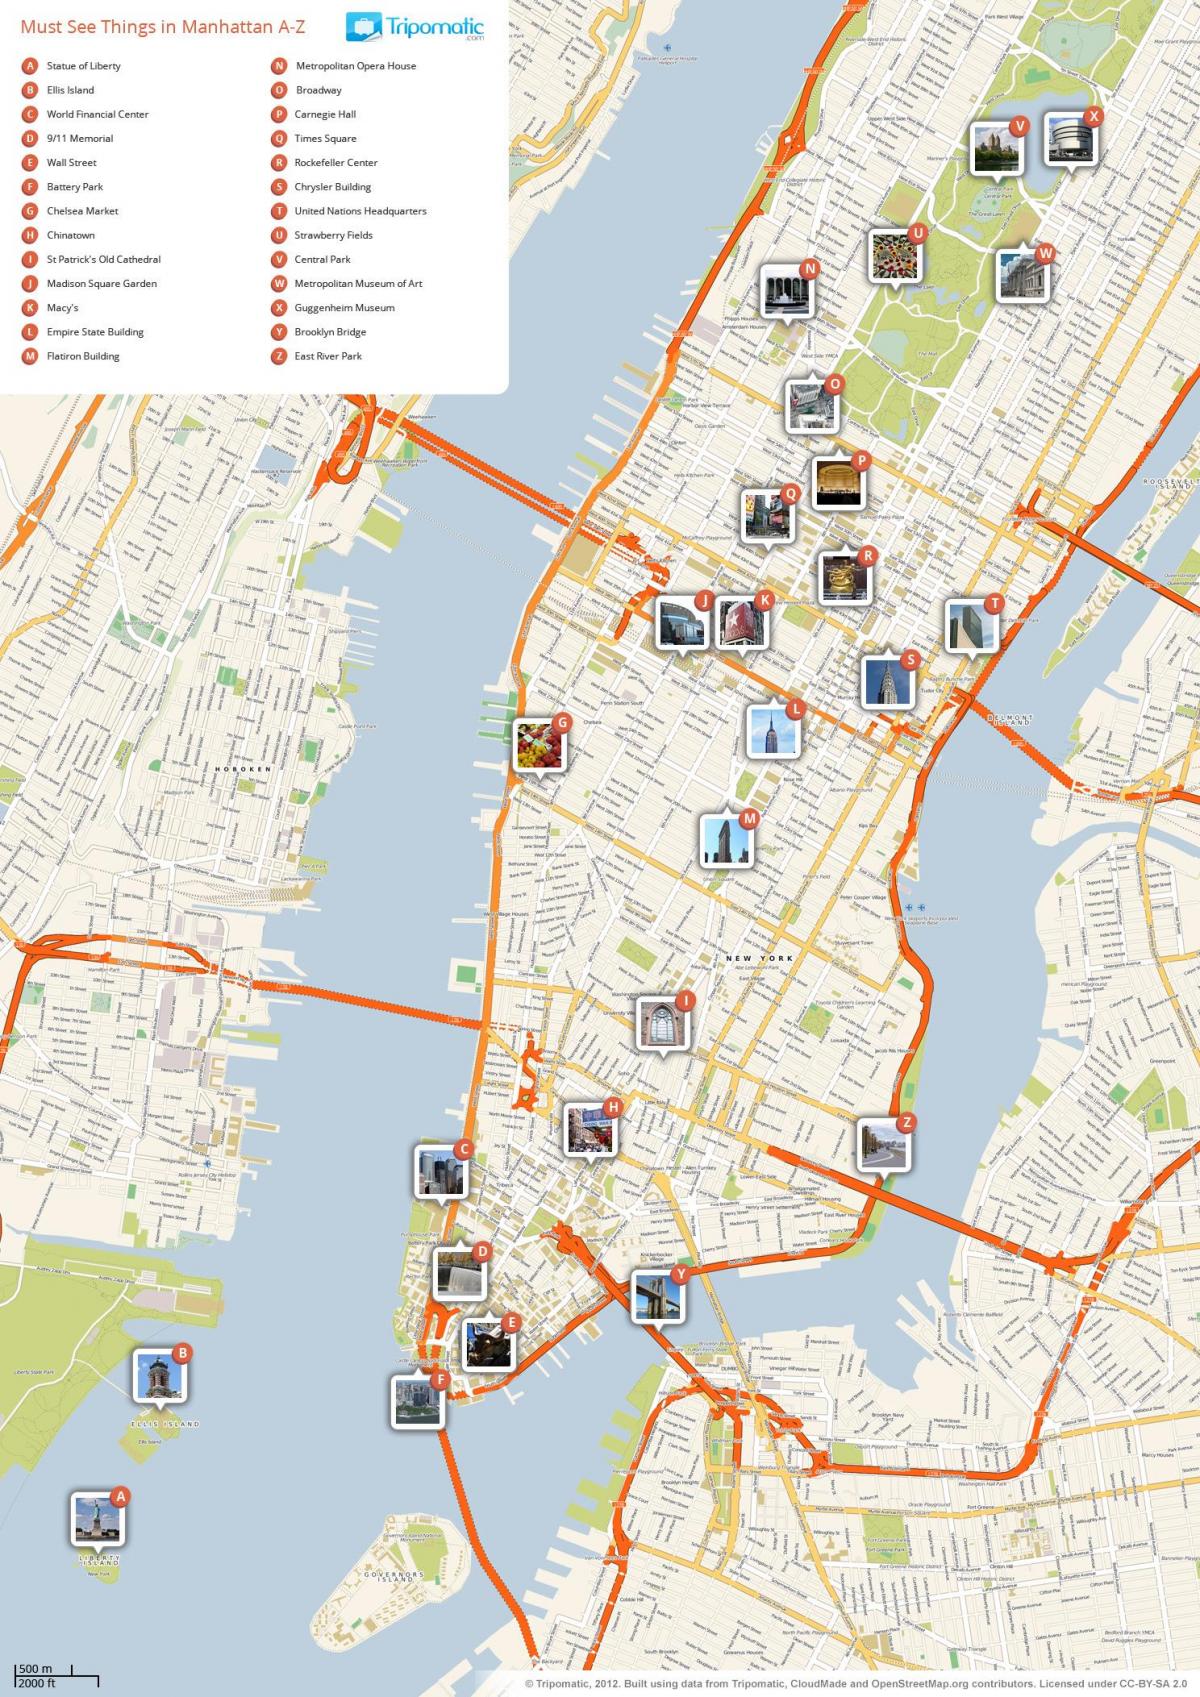 kort over Manhattan med punkter af interesse